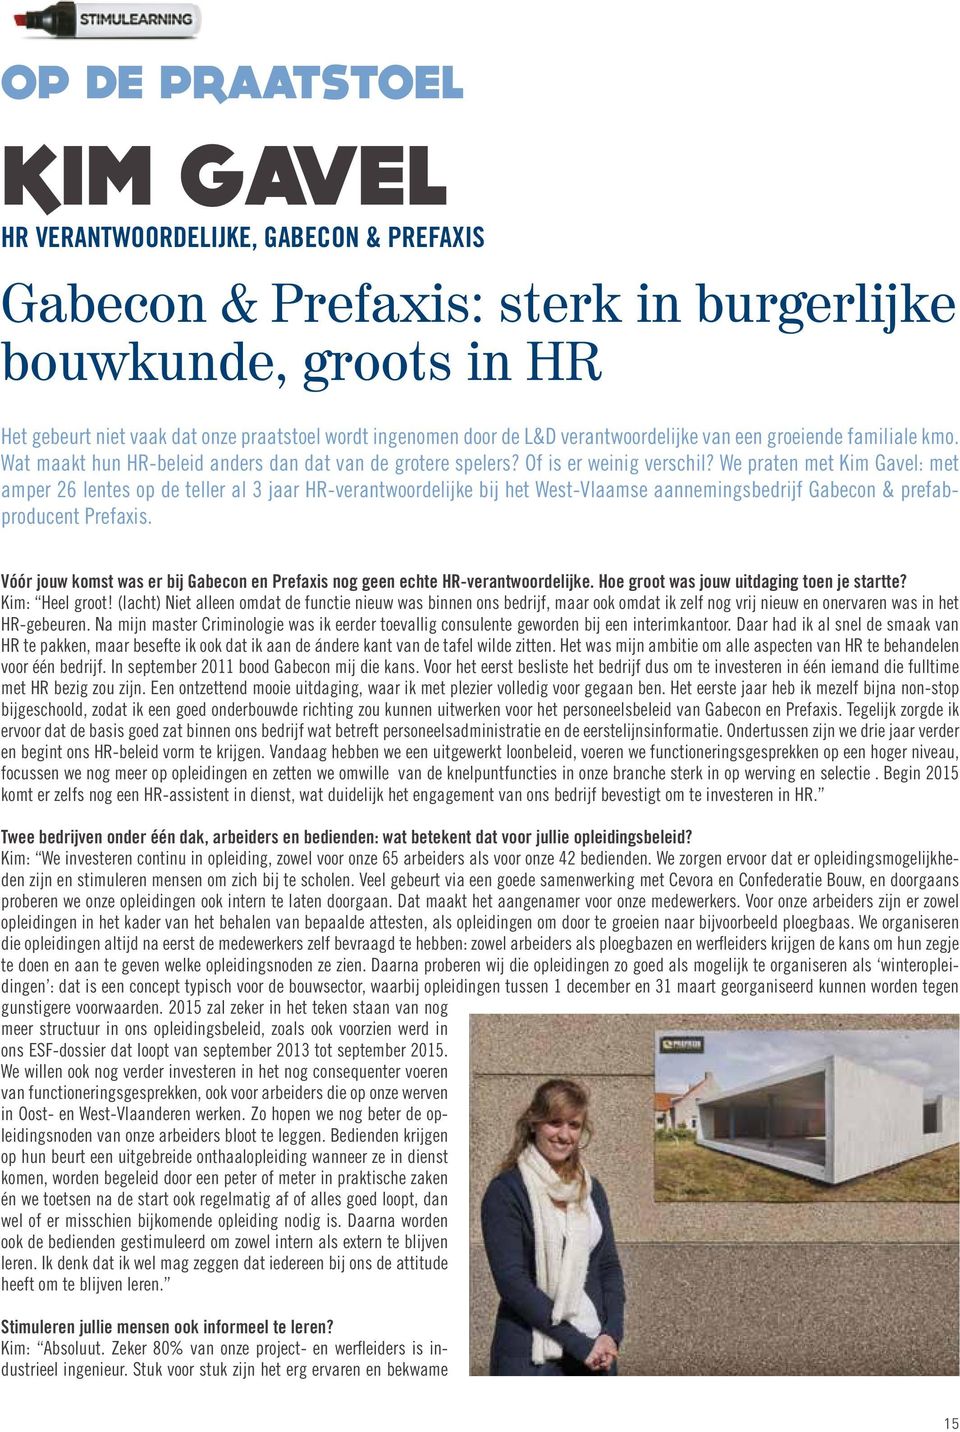 We praten met Kim Gavel: met amper 26 lentes op de teller al 3 jaar HR-verantwoordelijke bij het West-Vlaamse aannemingsbedrijf Gabecon & prefabproducent Prefaxis.